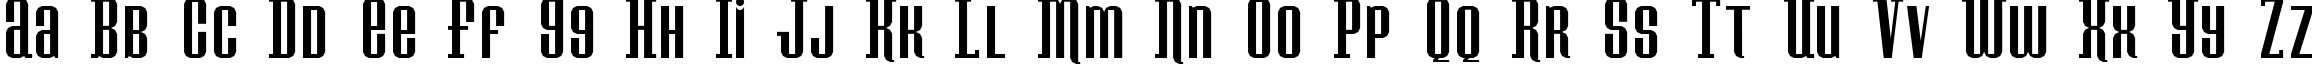 Пример написания английского алфавита шрифтом Konspiracy Theory